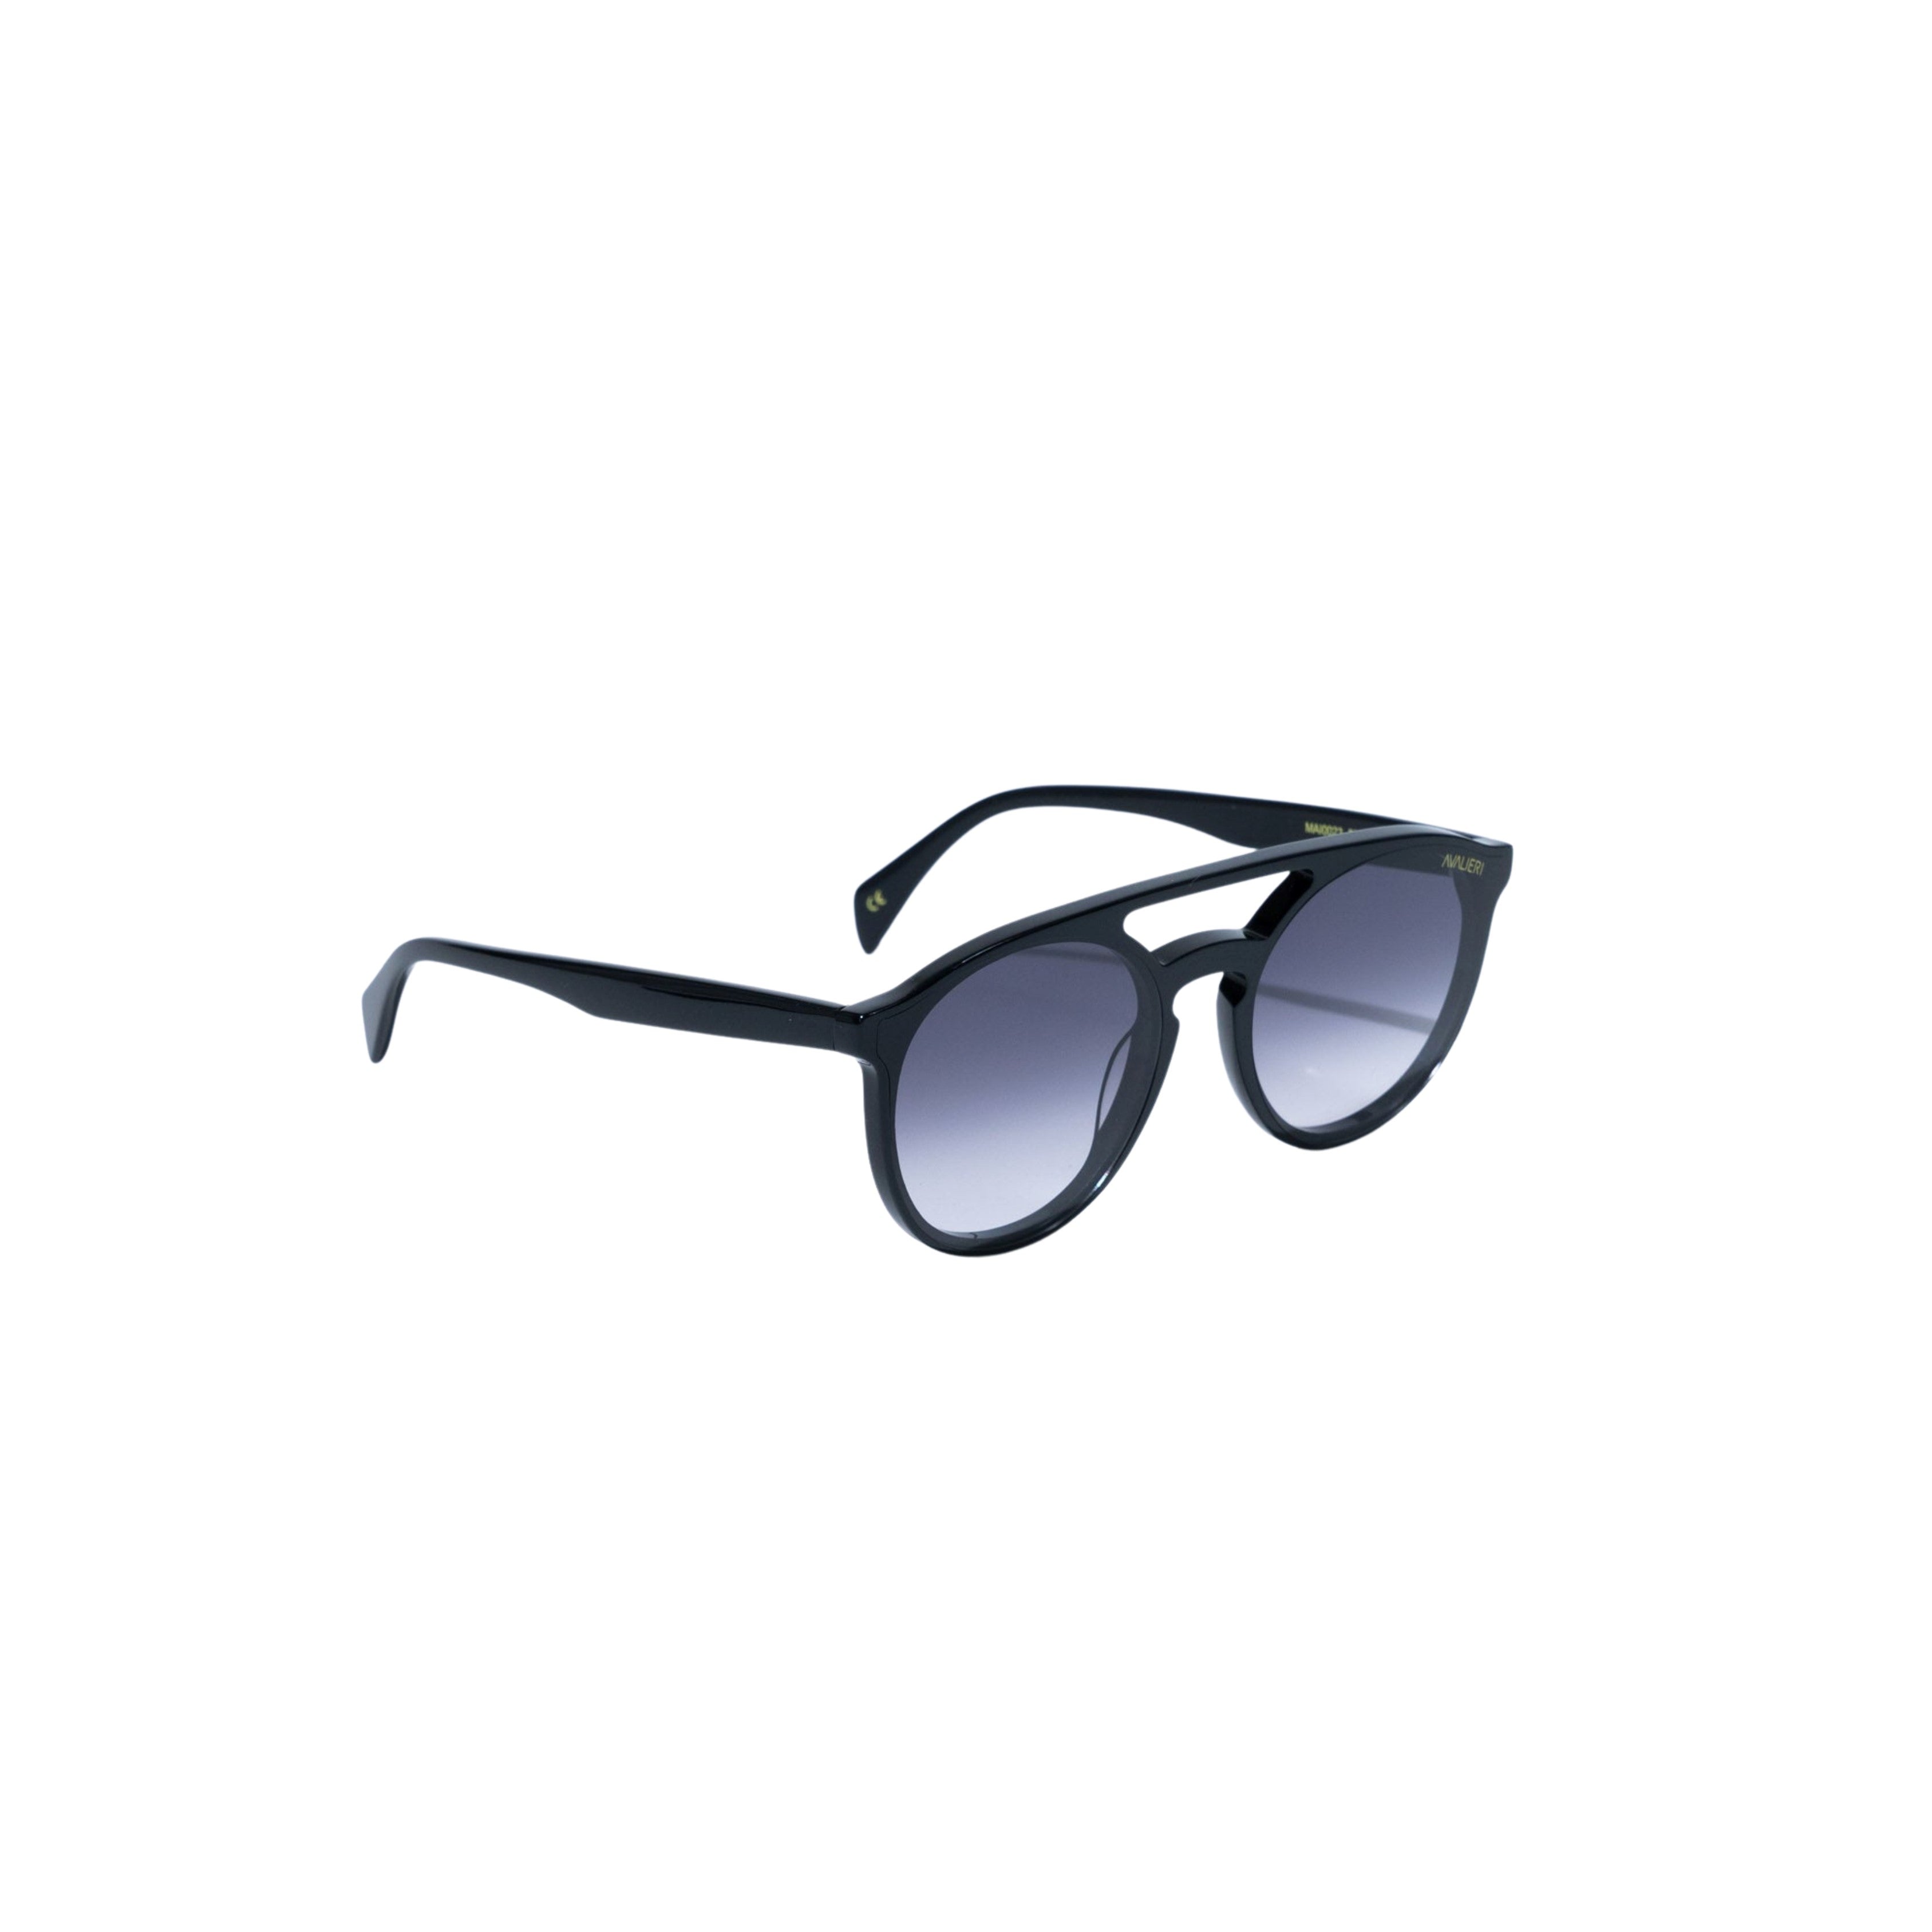 نظارات شمسية باللون الأسود للرجال والنساء من أفاليري - AVSG-0004